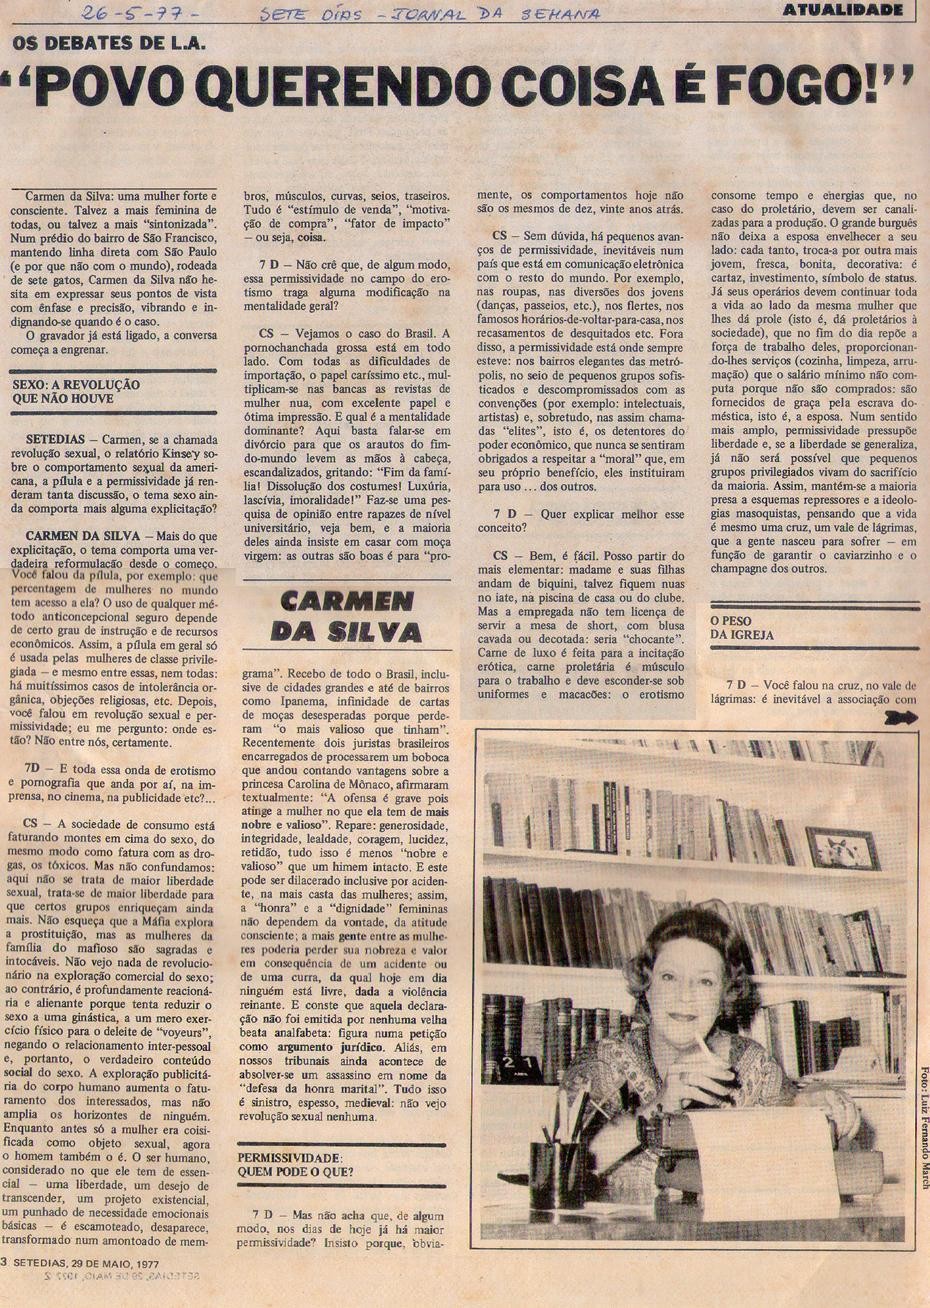 26 de Maio de 1977 - Jornal da Semana. "Povo querendo coisa é fogo".